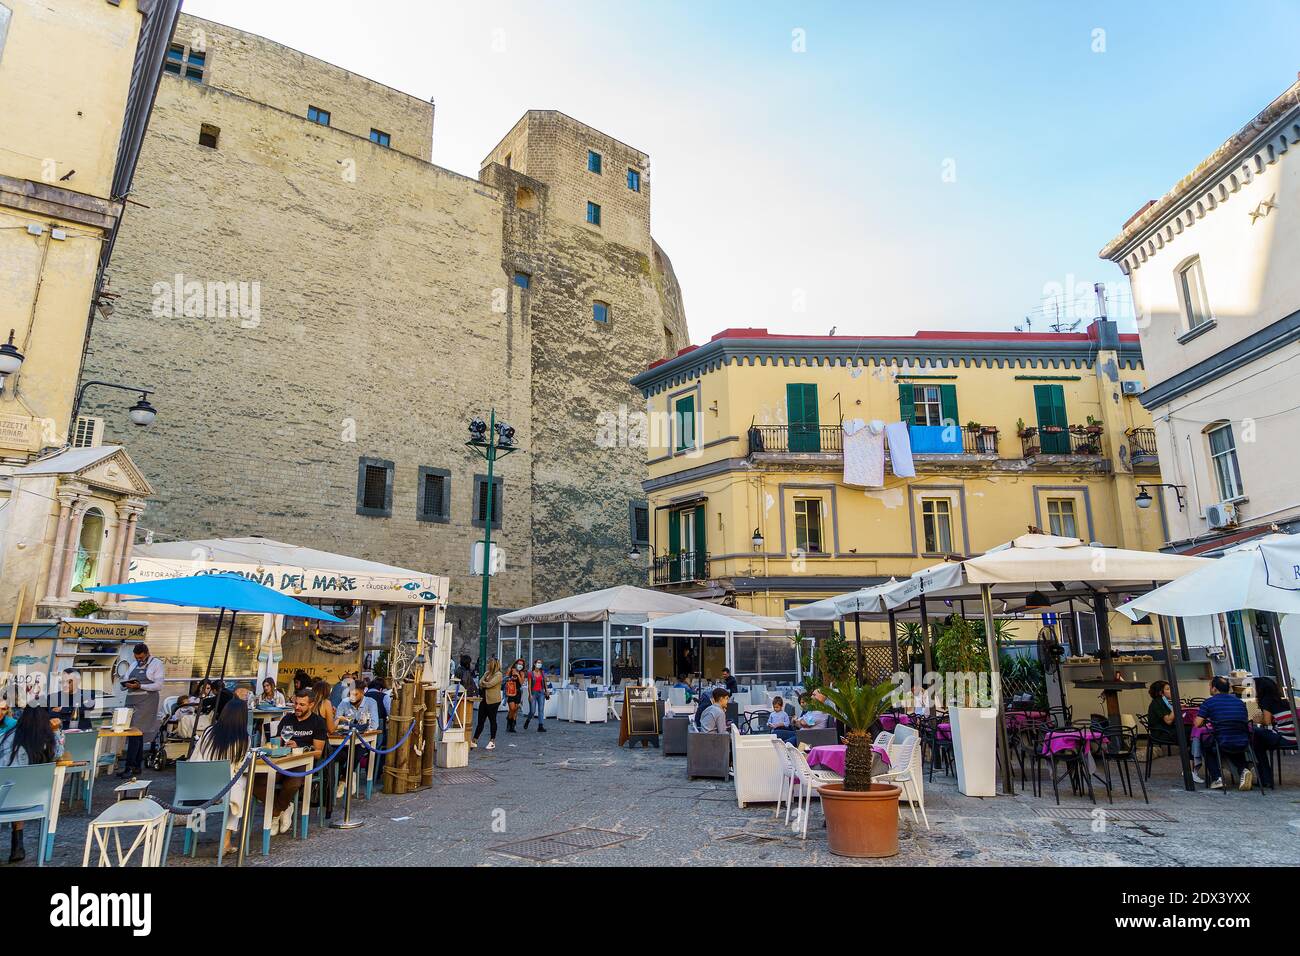 Neapel, Italien, Oktober 2020: Das berühmte Borgo Marinari von Neapel auf der Insel Megaride, in der Nähe des Castel dell'Ovo, Egg Castle. Touristen gehen mit Masken während der Covid Zeit Stockfoto